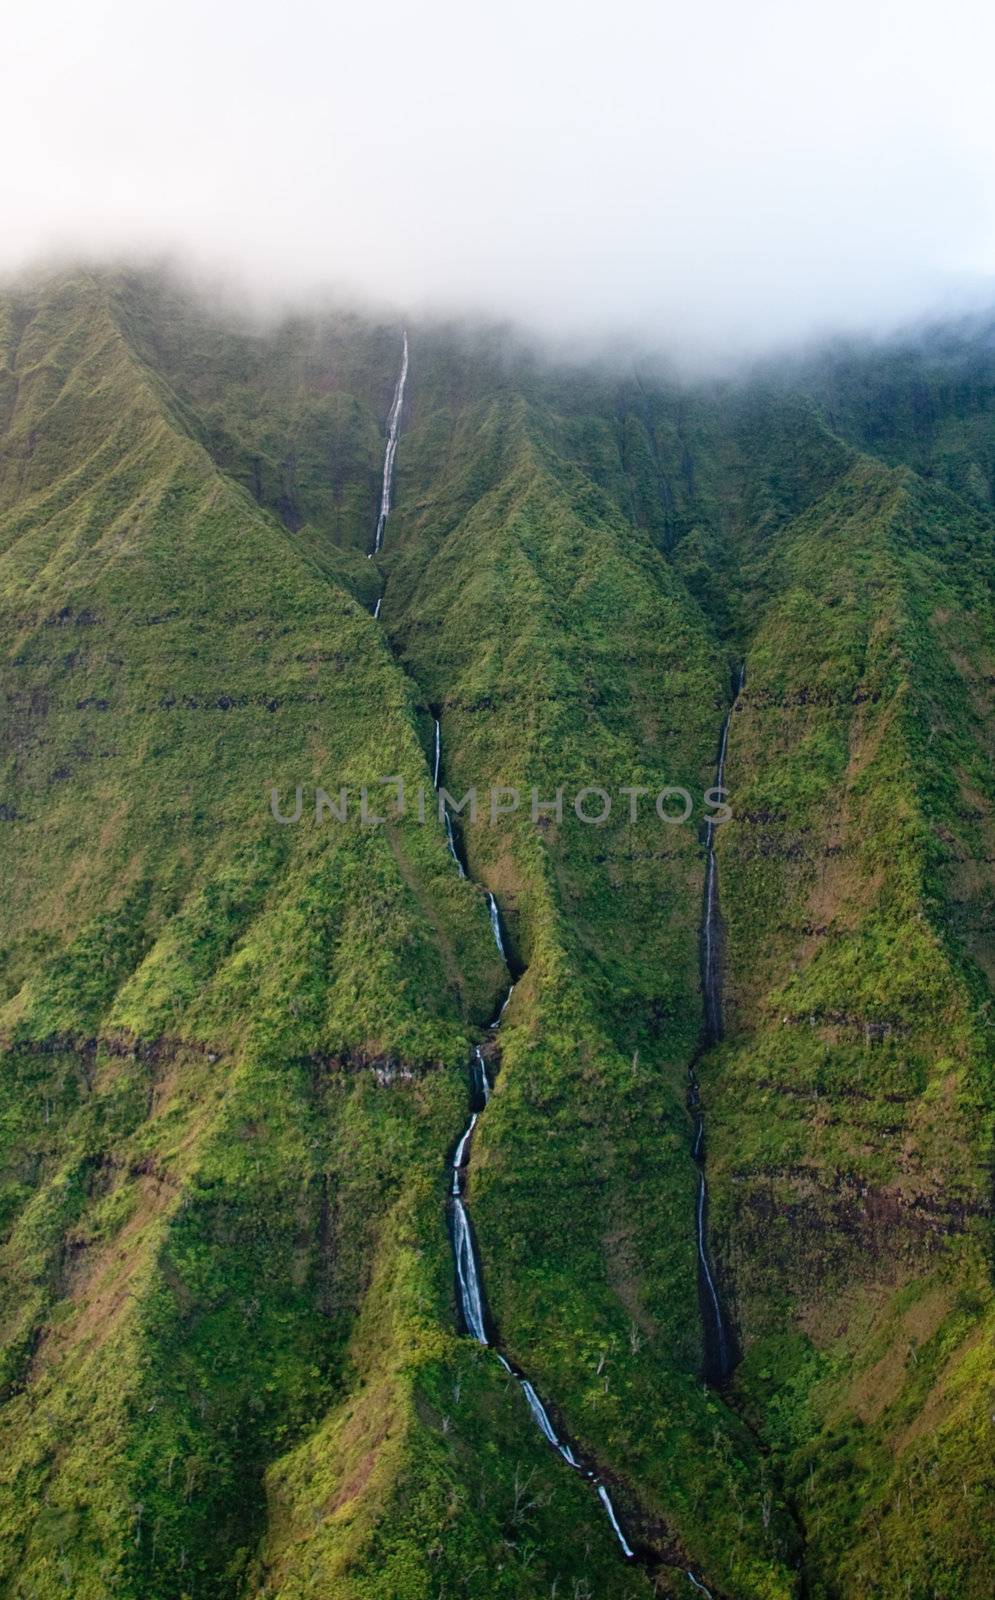 Waterfall off Mt Waialeale in Kauai by steheap